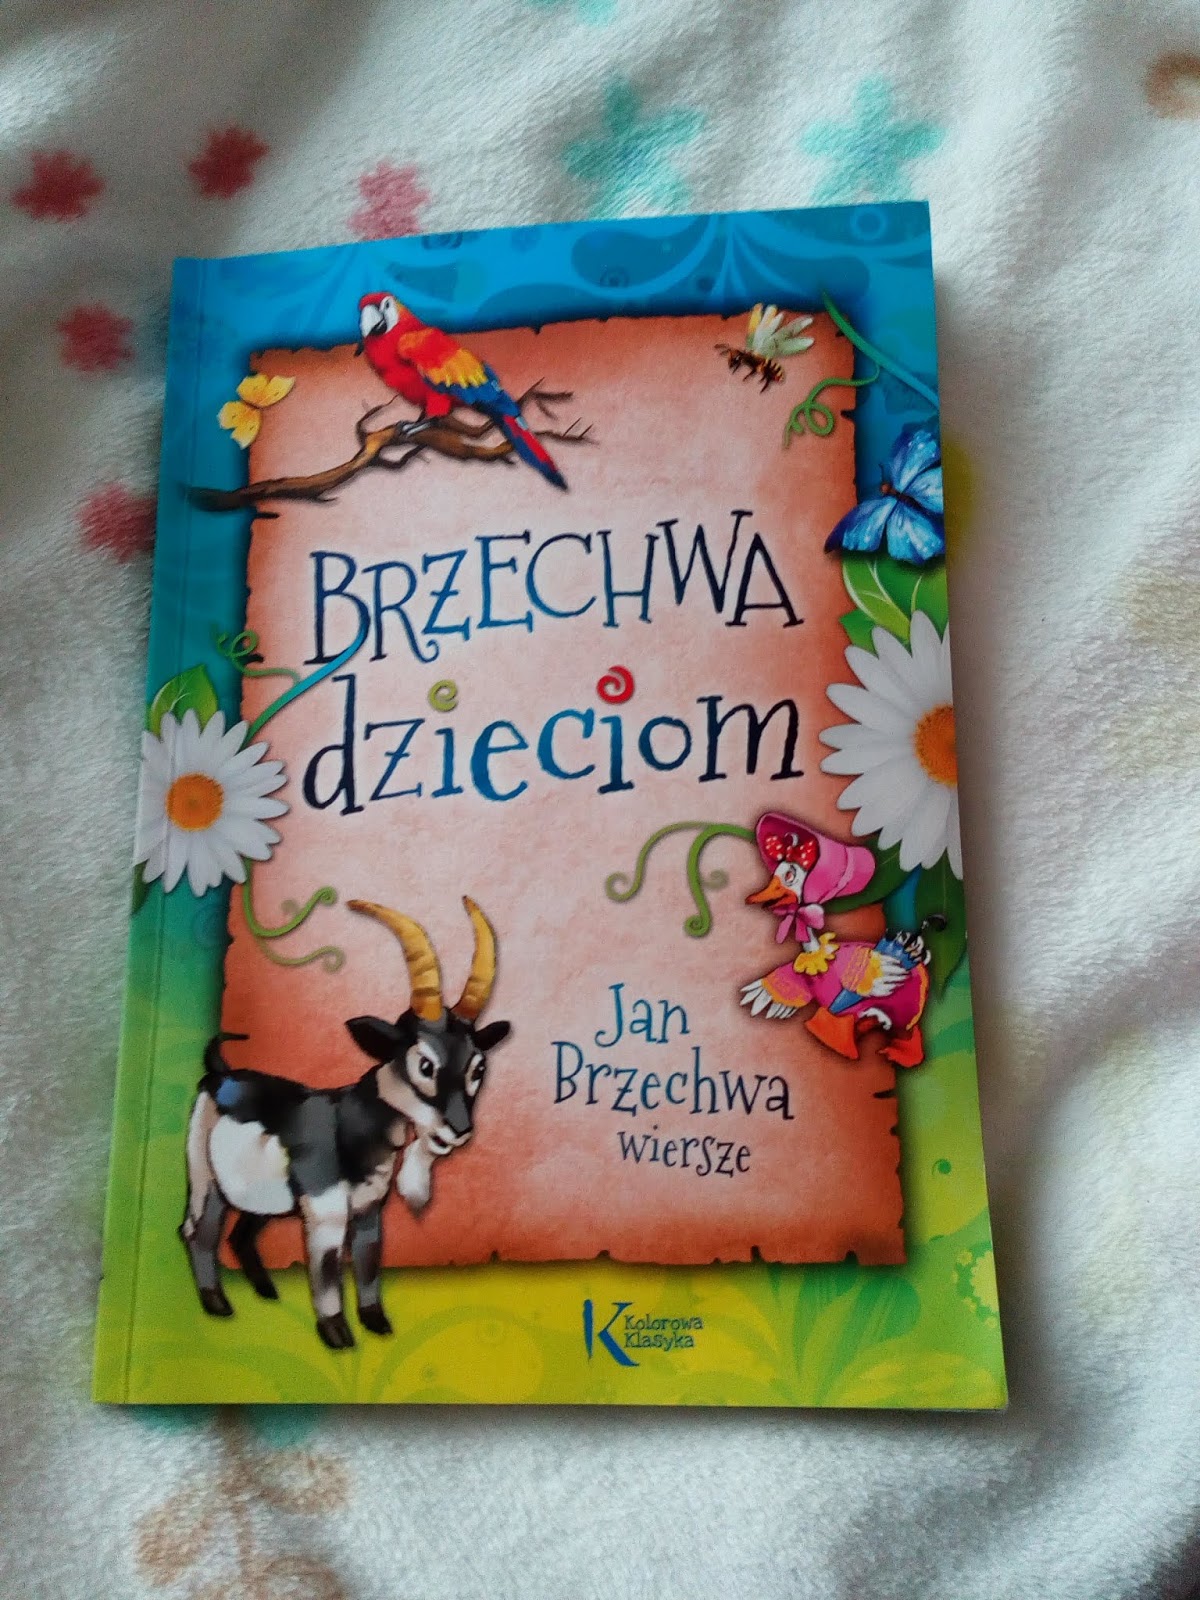 Brzechwa dzieciom by Jan Brzechwa